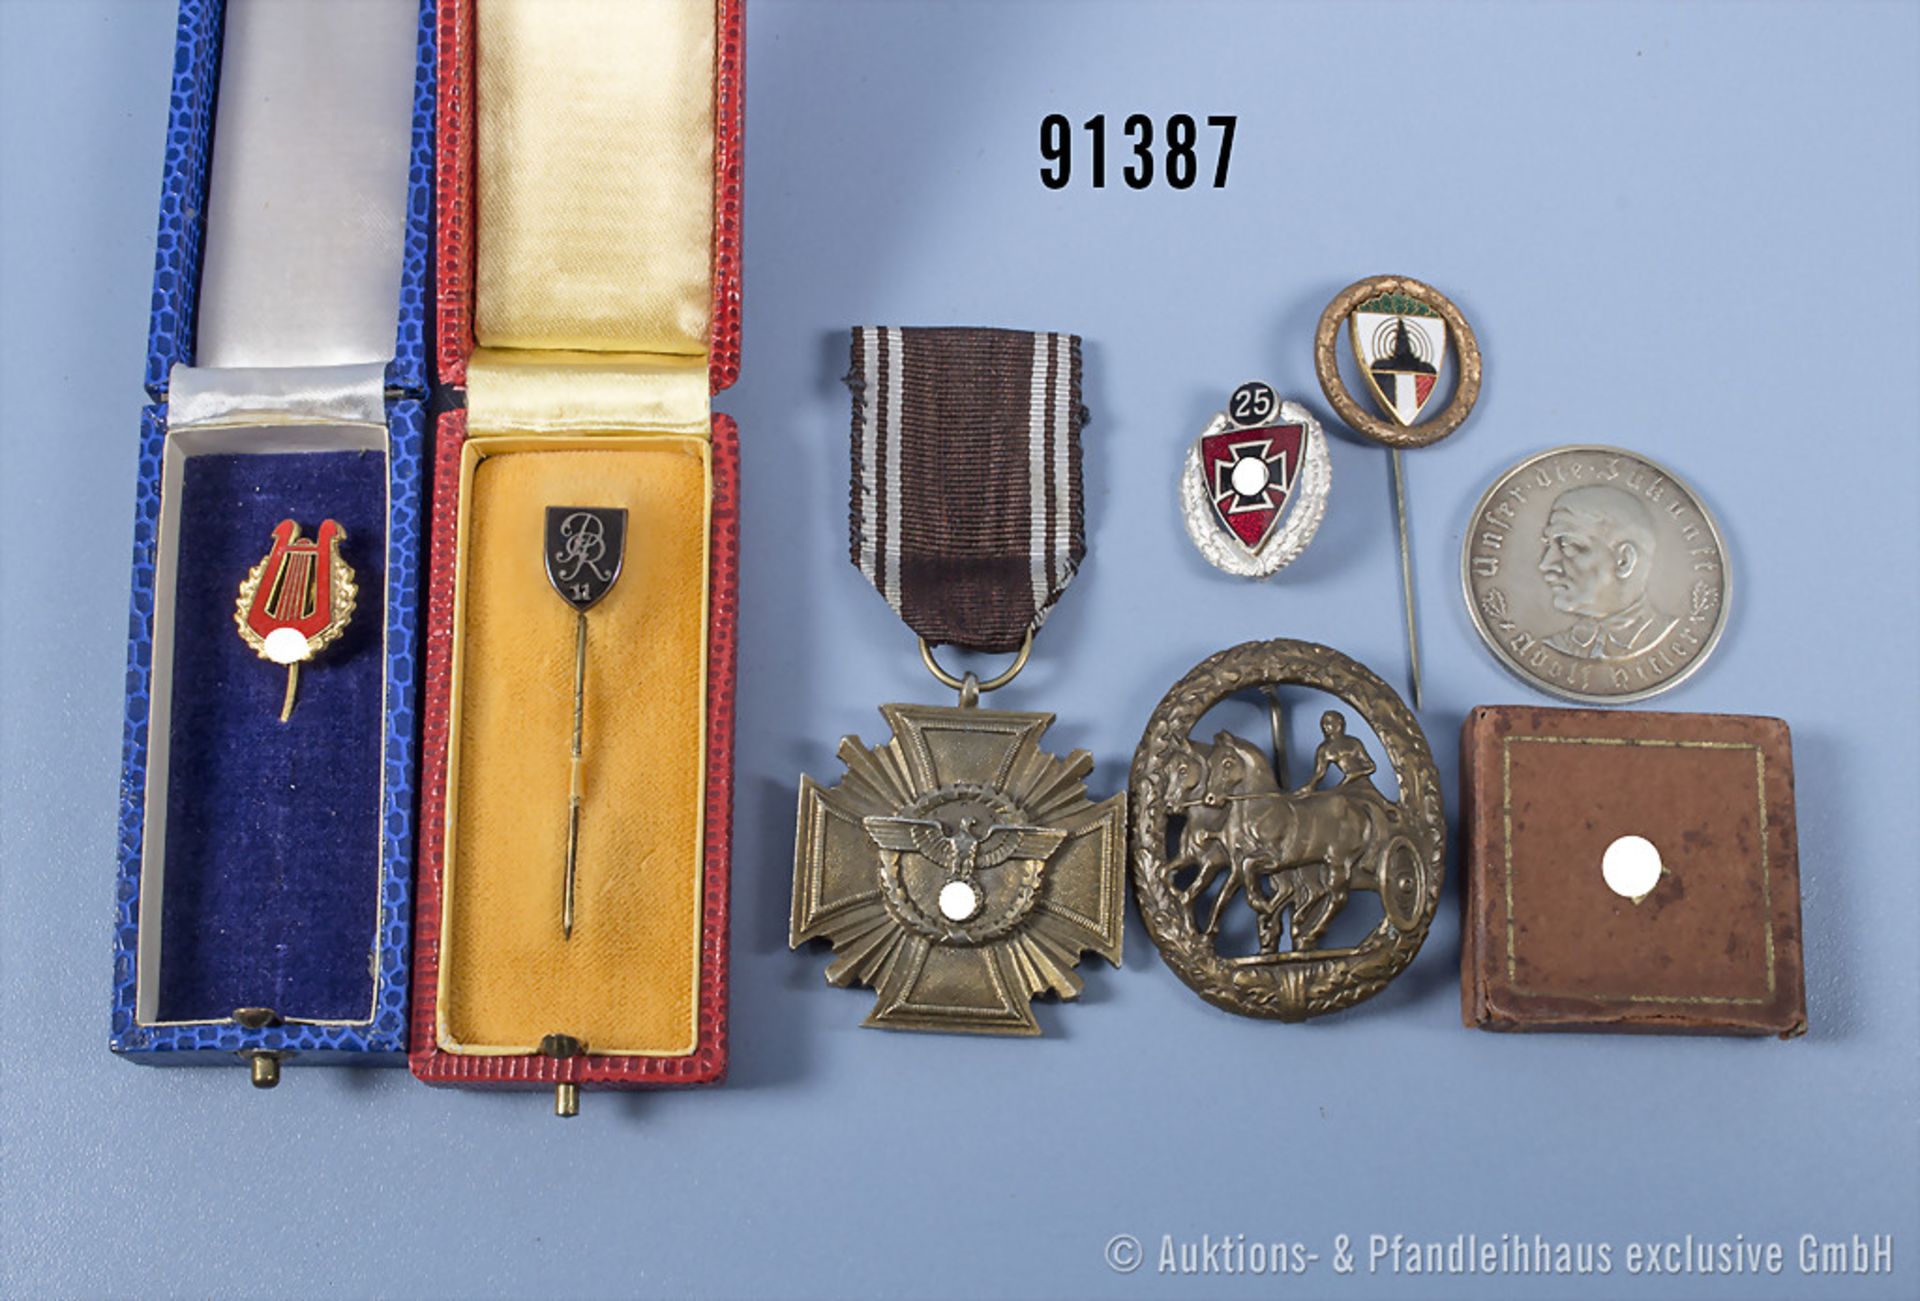 Konv. Mitgliedsabzeichen vom Reichsverband der Volksmusik und Regimentsnadel, jeweils in ...